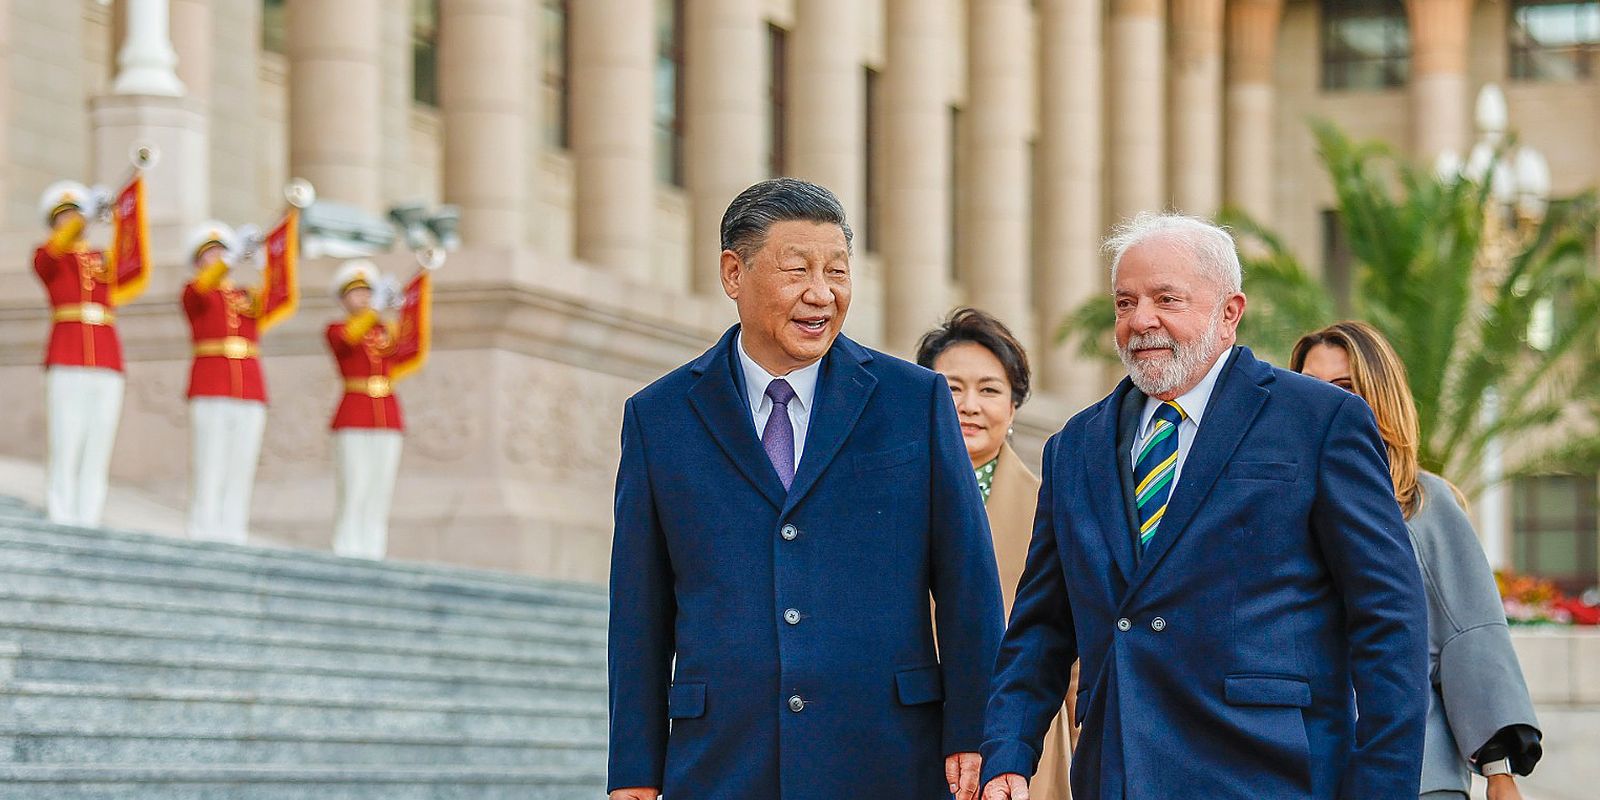 Viagem reforça papel de Brasil e China no cenário internacional